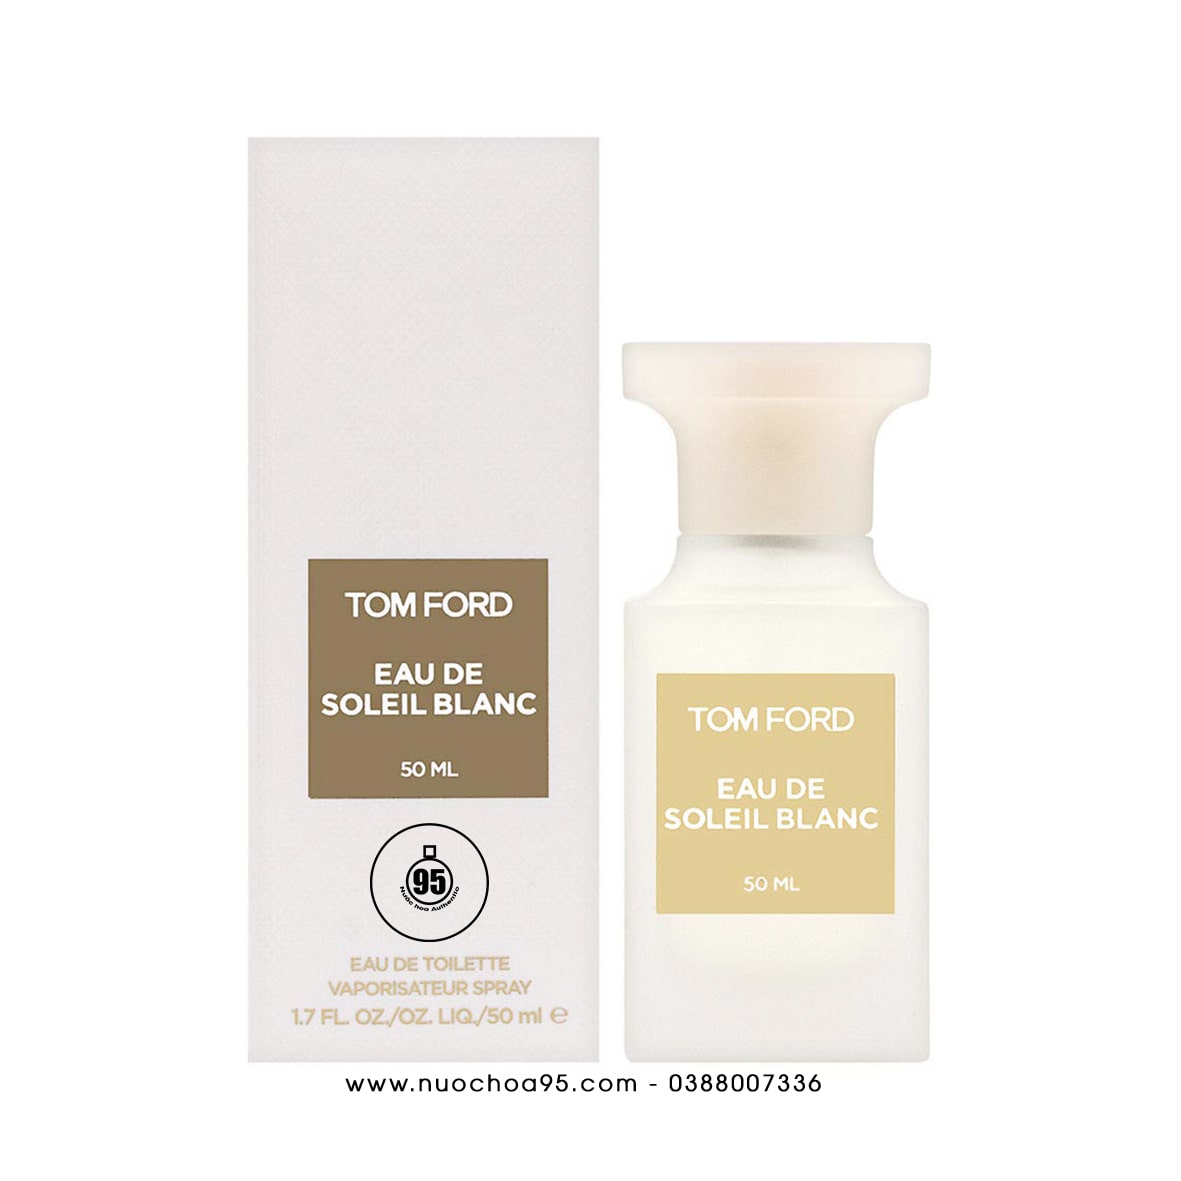 Nước hoa Tom Ford Eau De Soleil Blanc